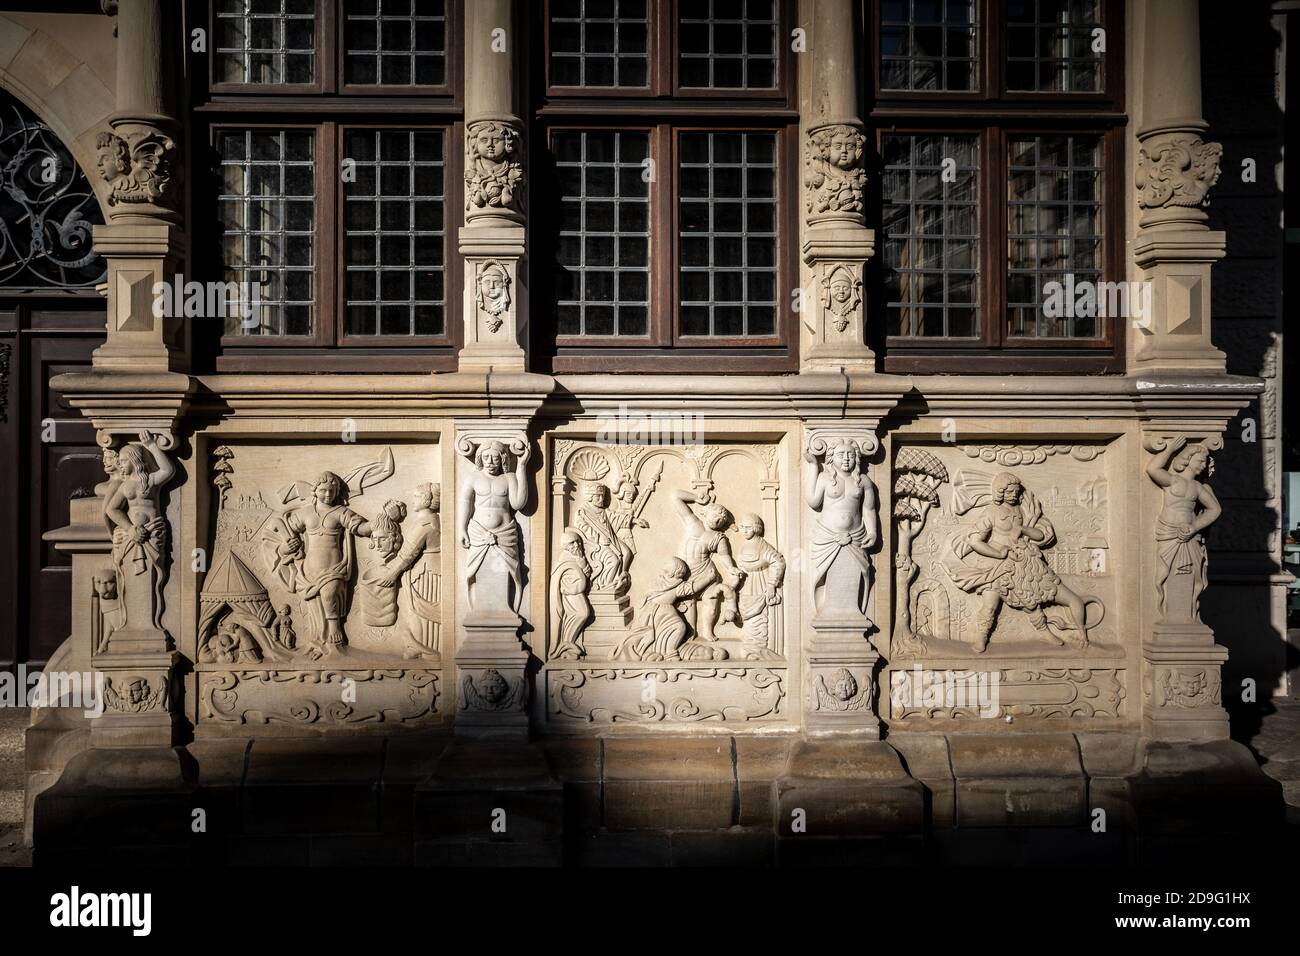 Leibnizhaus façade sculpture Centre-ville de Hanovre, Allemagne Banque D'Images